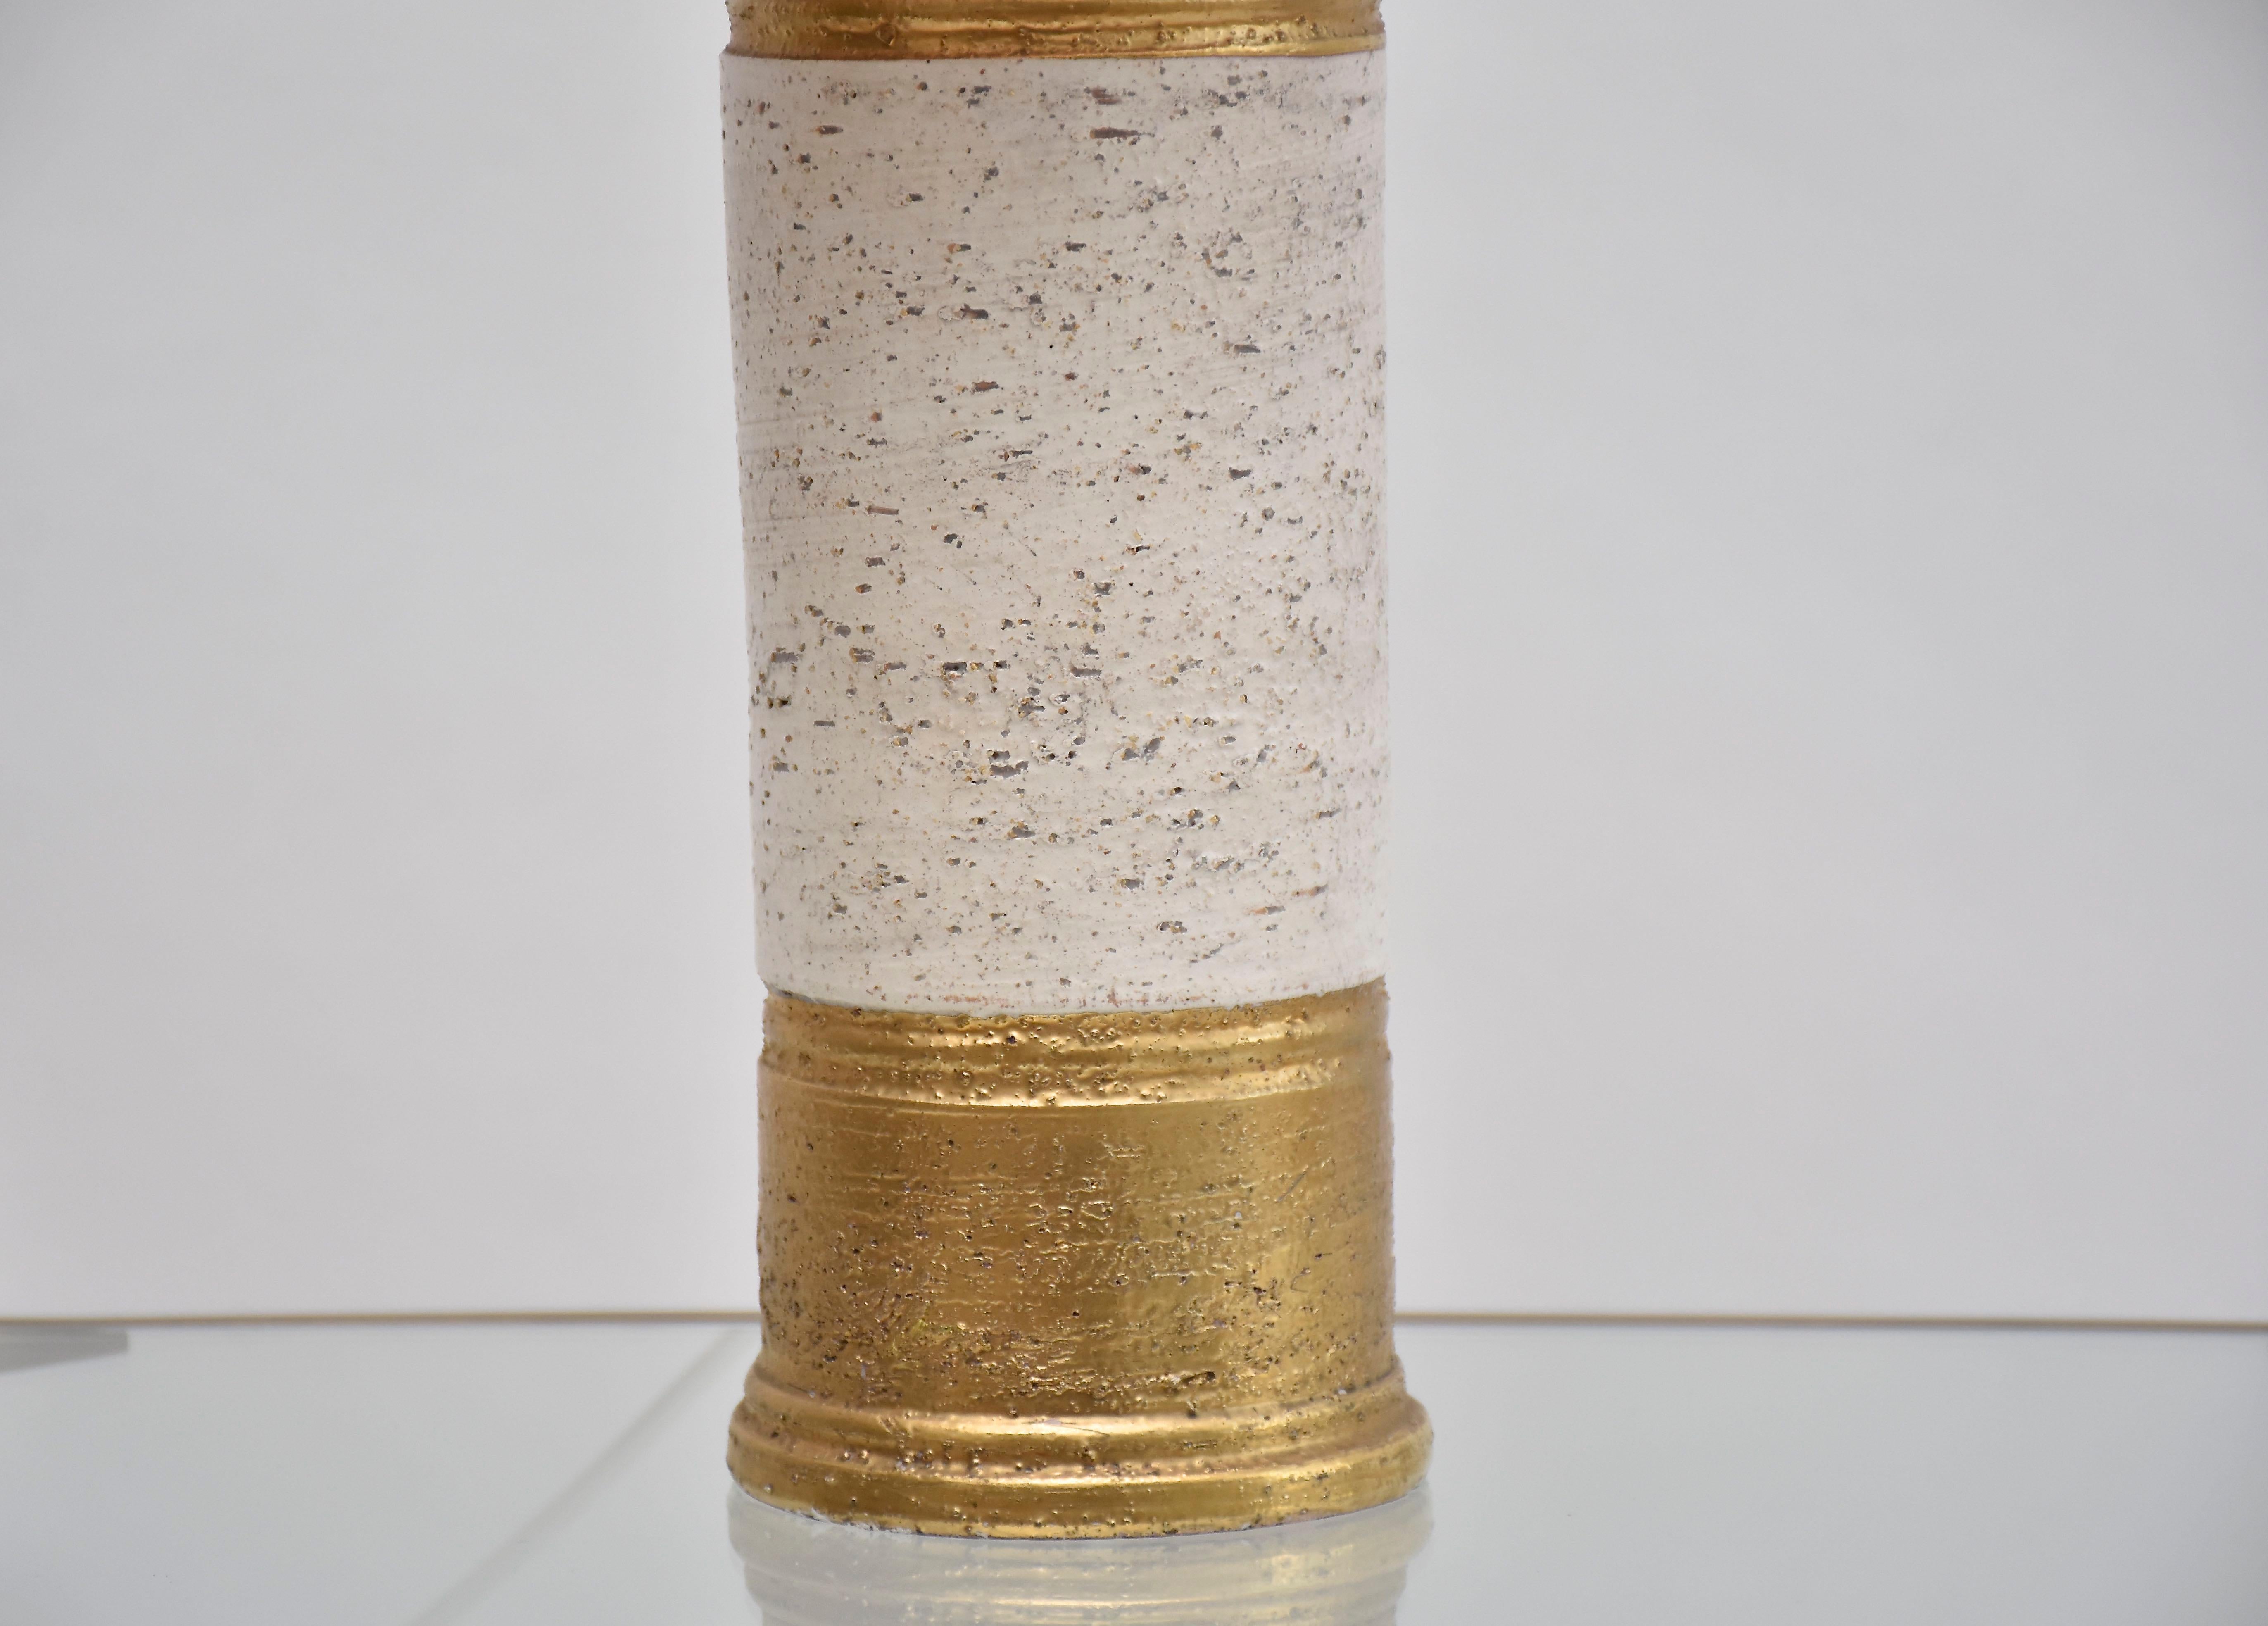 Magnifique lampe de table en céramique conçue par Bitossi pour Bergboms- Suède.
Cette jolie lampe a une base et un dessus émaillés or avec au centre une texture 